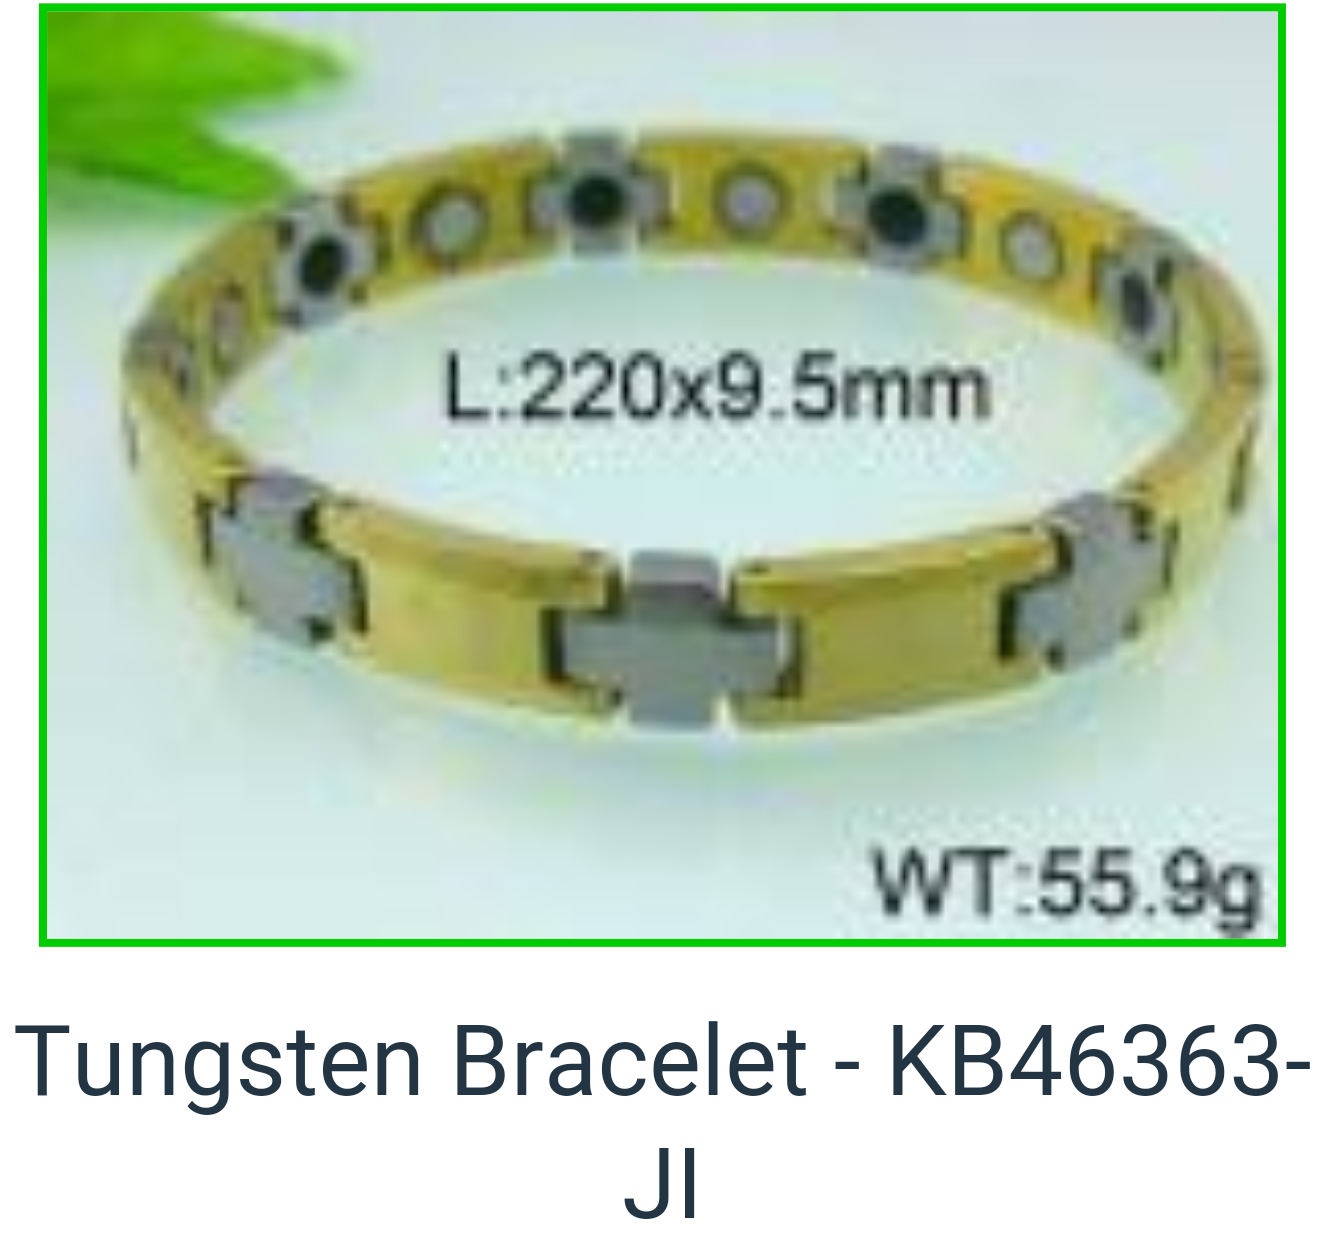 KB4663JI - Tungsten Bracelet level 3